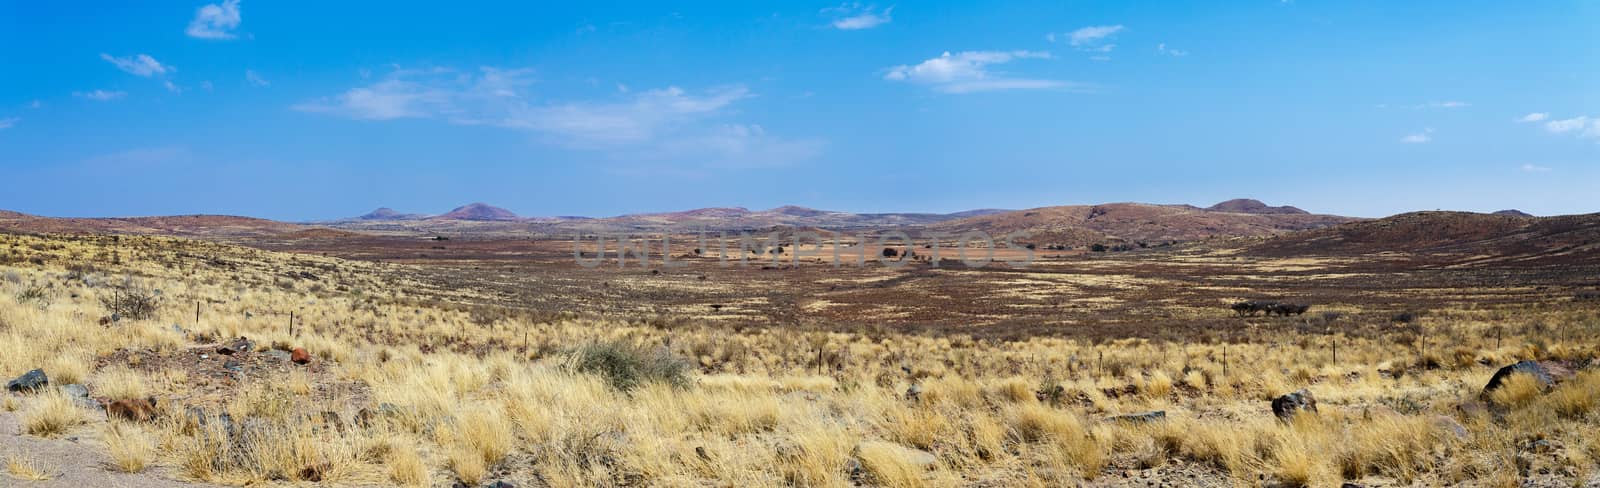 panorama of fantastic Namibia moonscape landscape, Hardap region